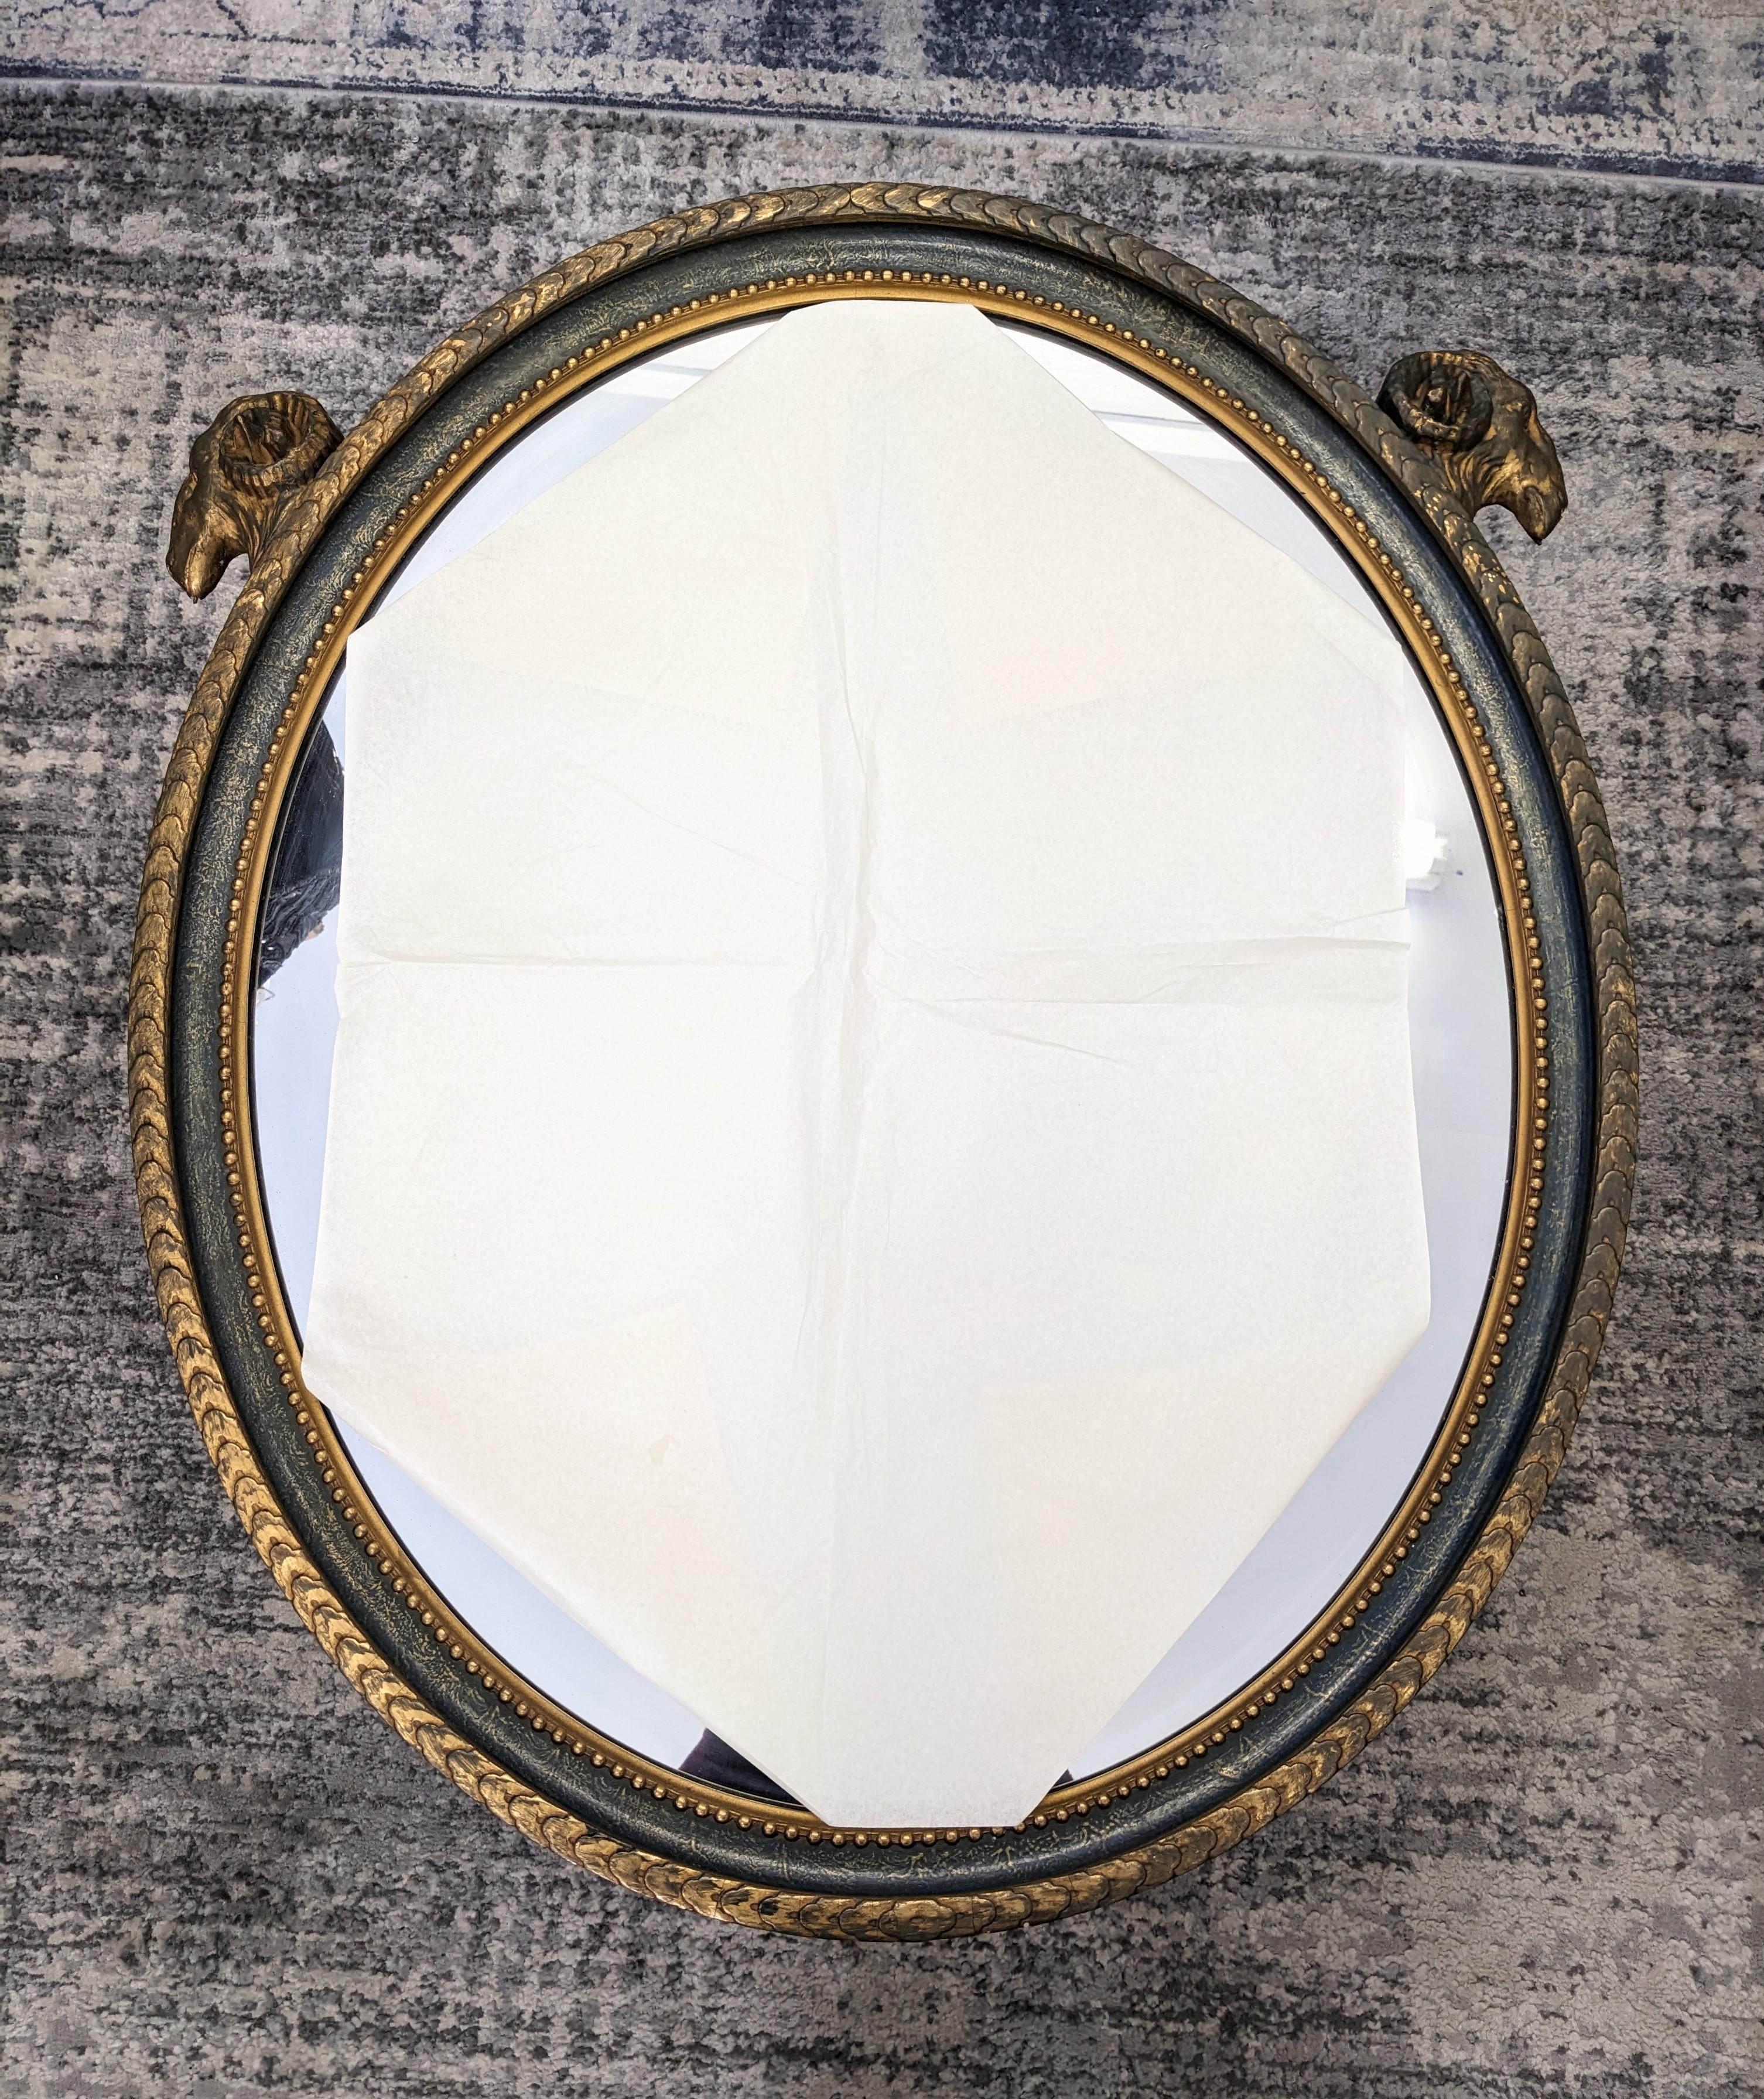 Eleganter ovaler Spiegel mit Widderkopfmotiv aus den 1920er Jahren im neoklassischen Stil mit antiker Gold- und tiefblauer Patina. Schöne ovale Form mit neoklassizistischen Verzierungen. Maße 32